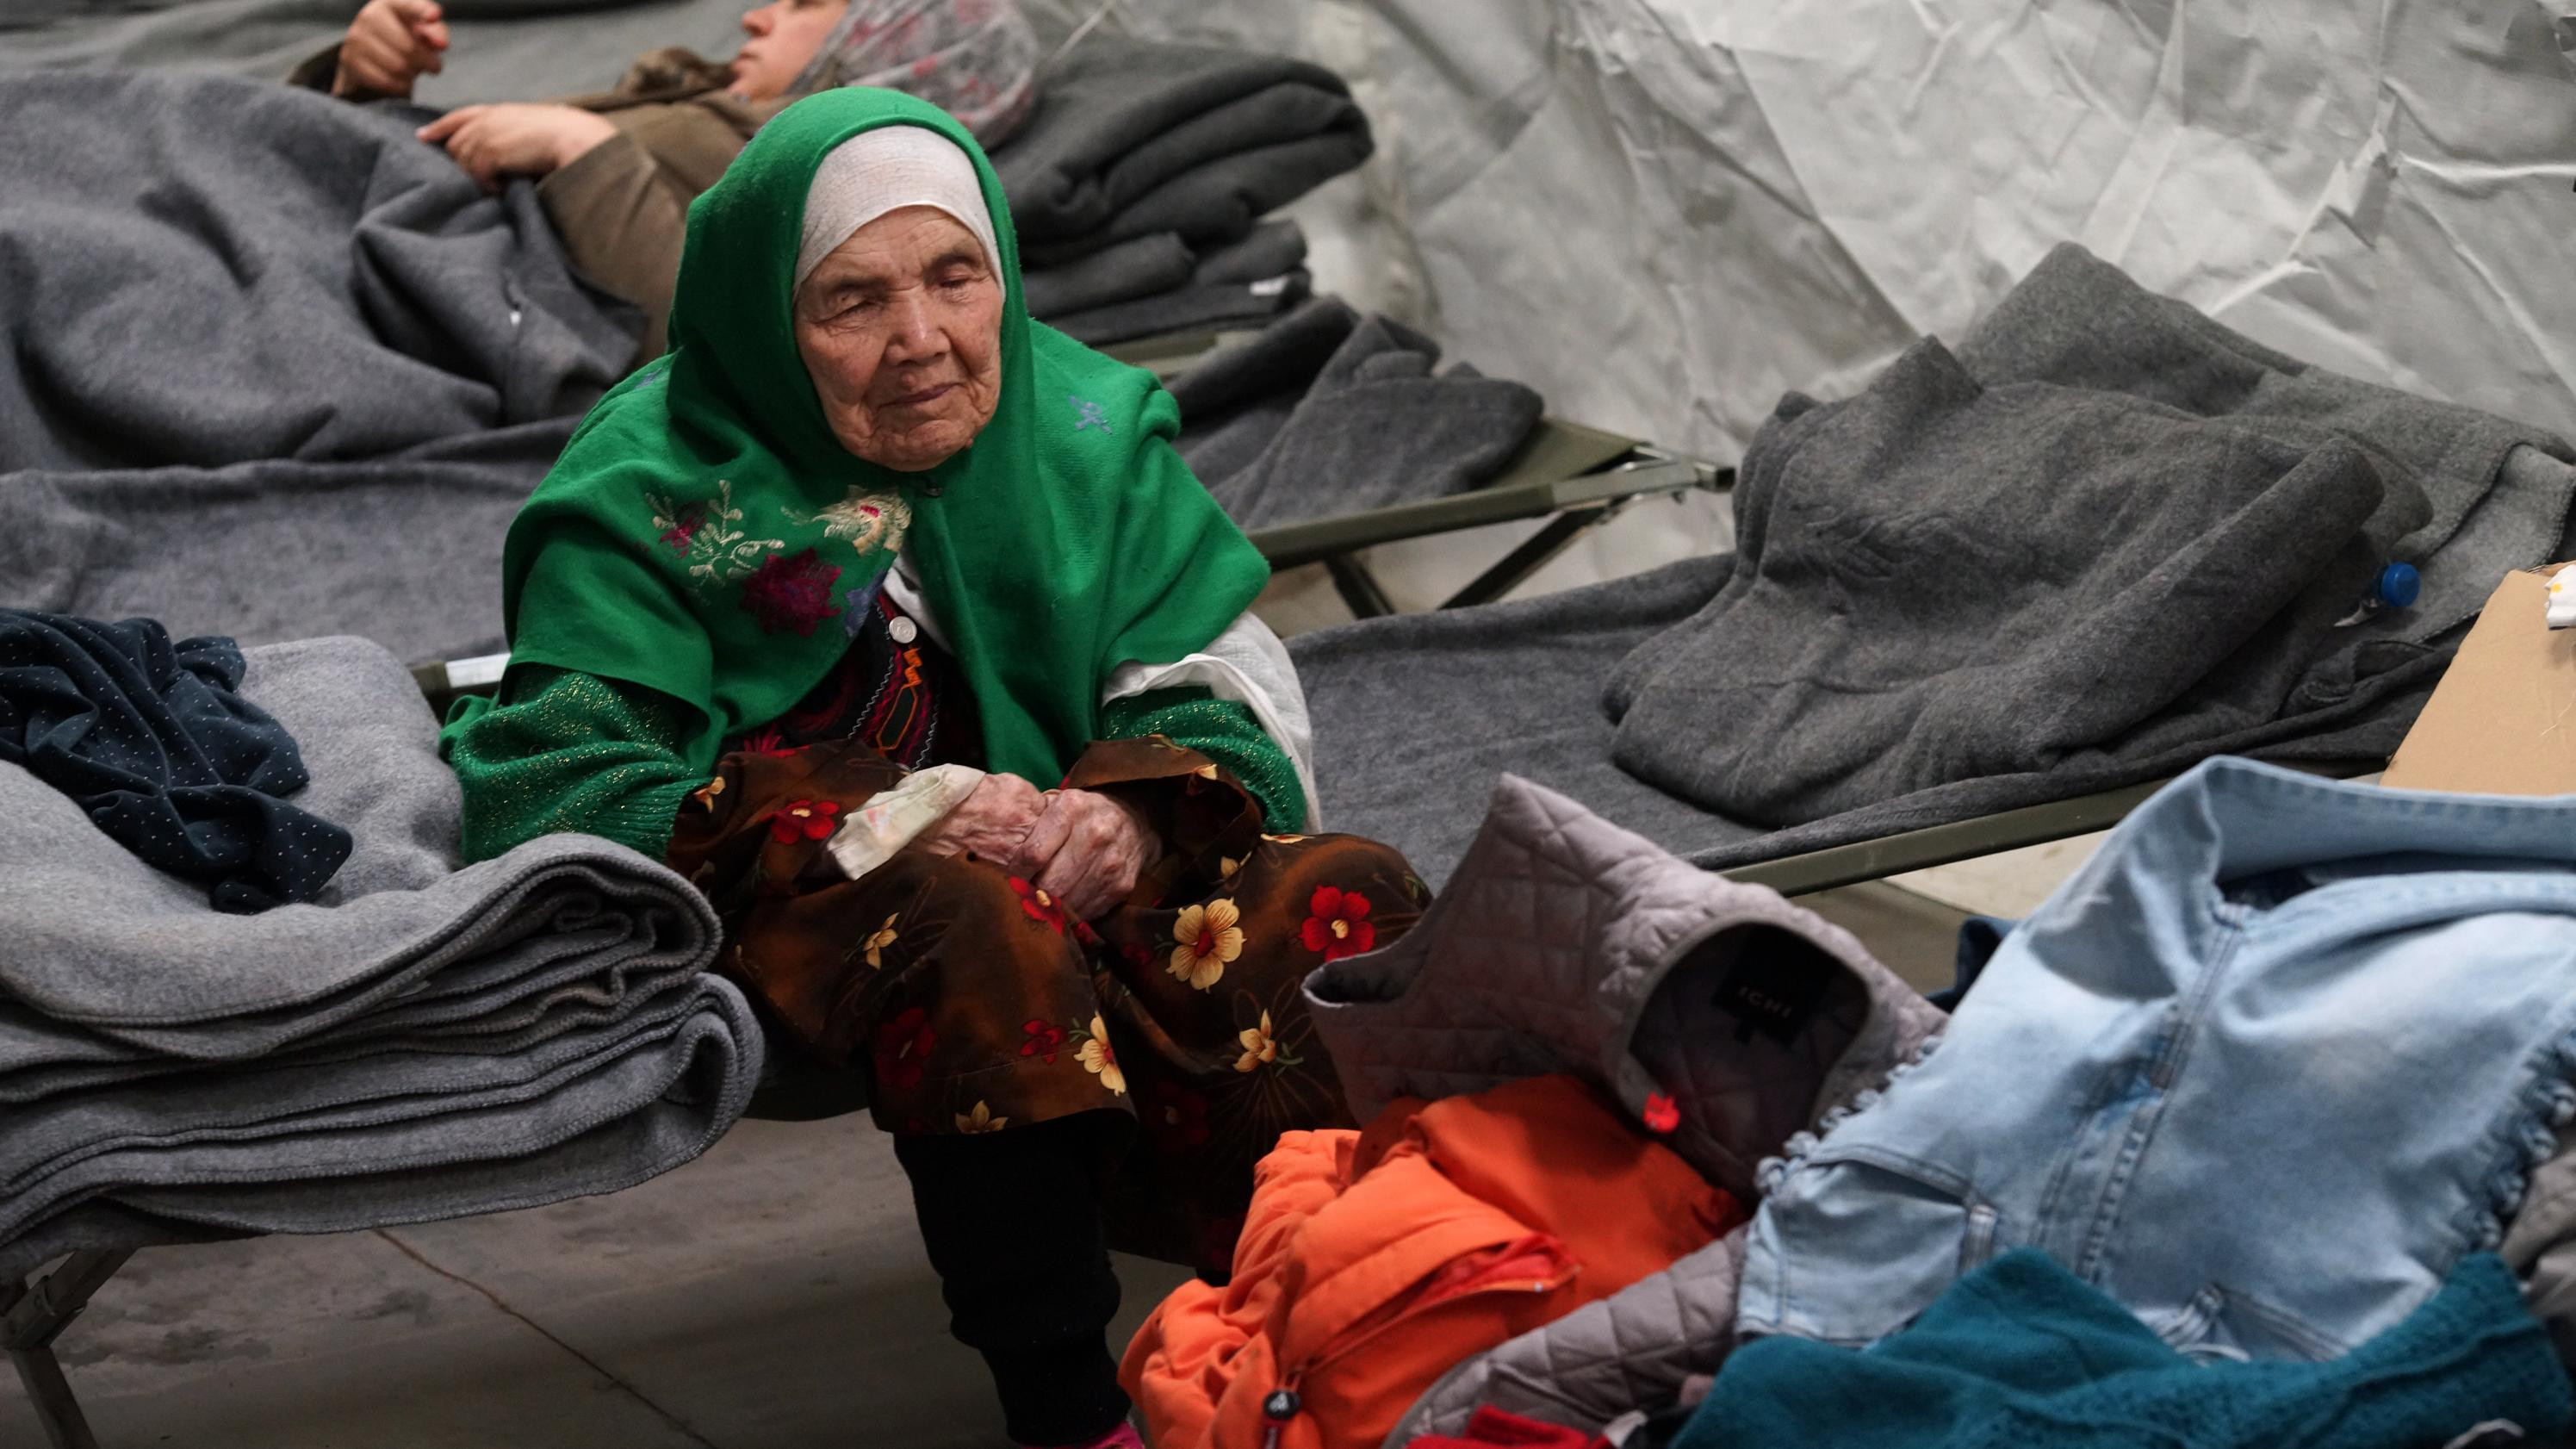 Η Σουηδία απελαύνει την Μπιμπικάλ, την γηραιότερη πρόσφυγα του κόσμου [ΒΙΝΤΕΟ]